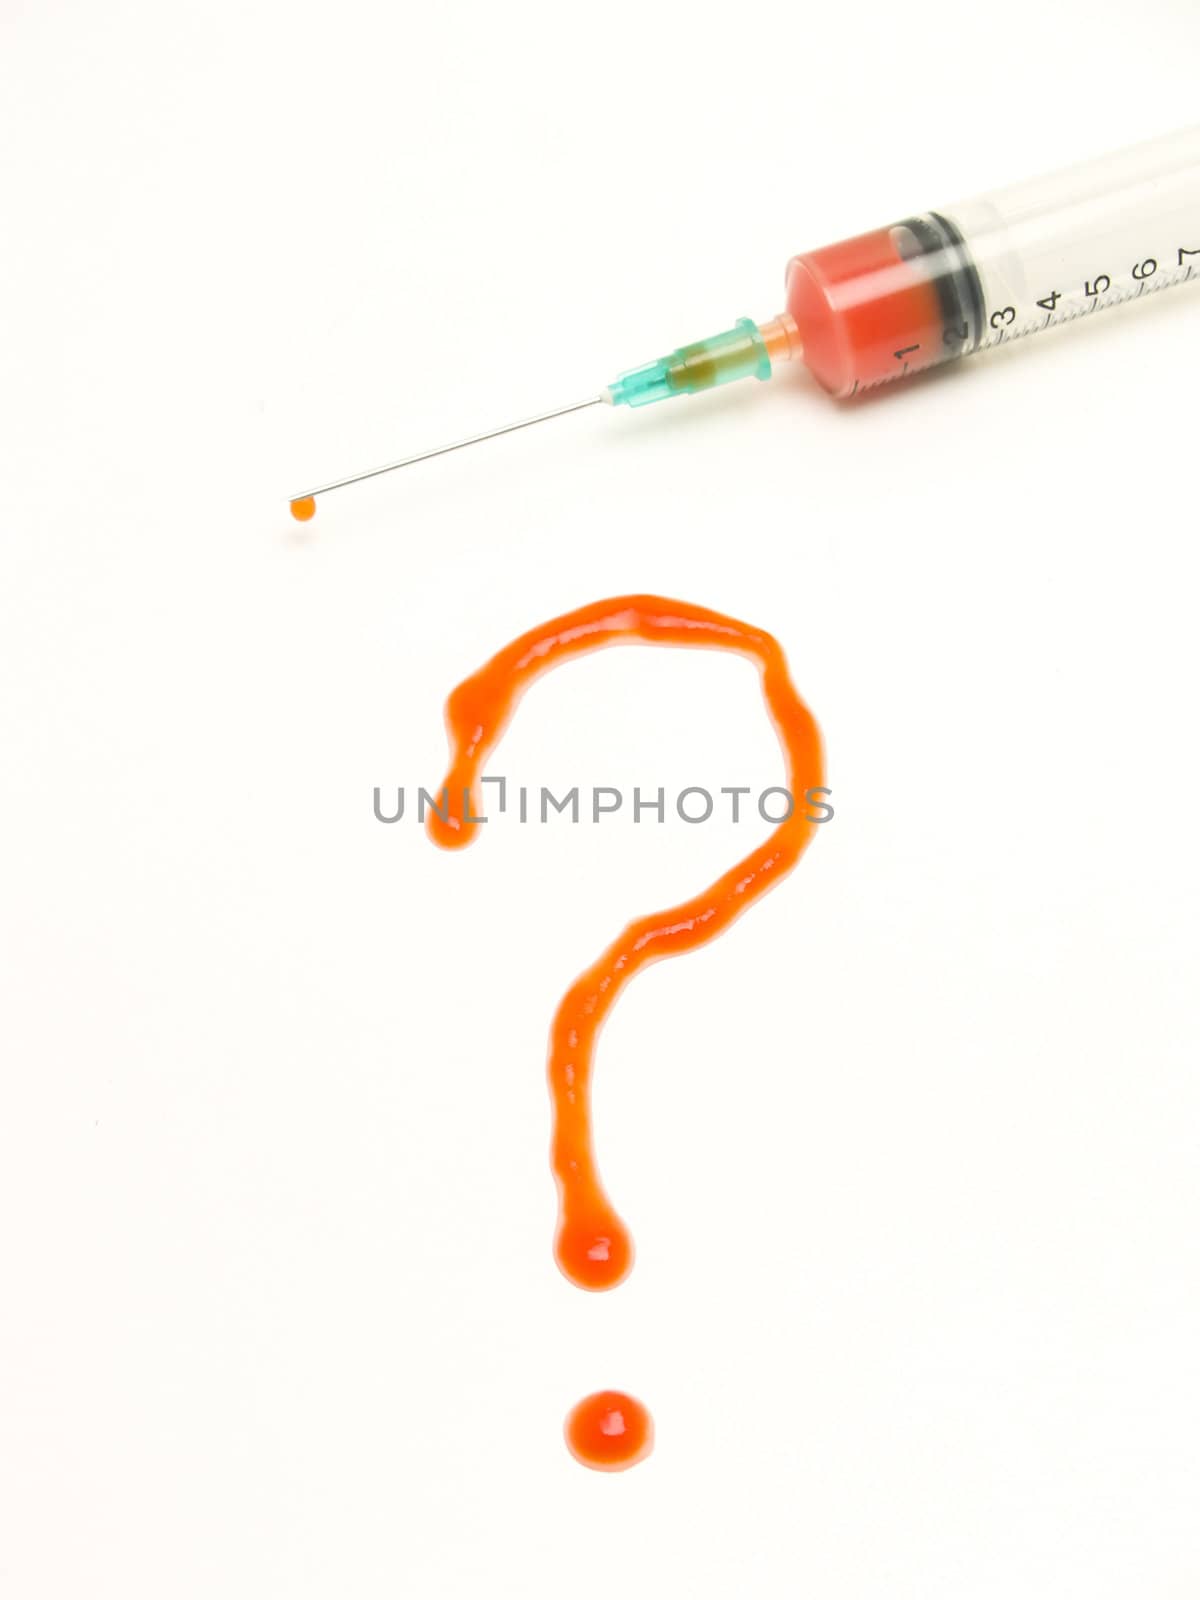 Syringe with blood